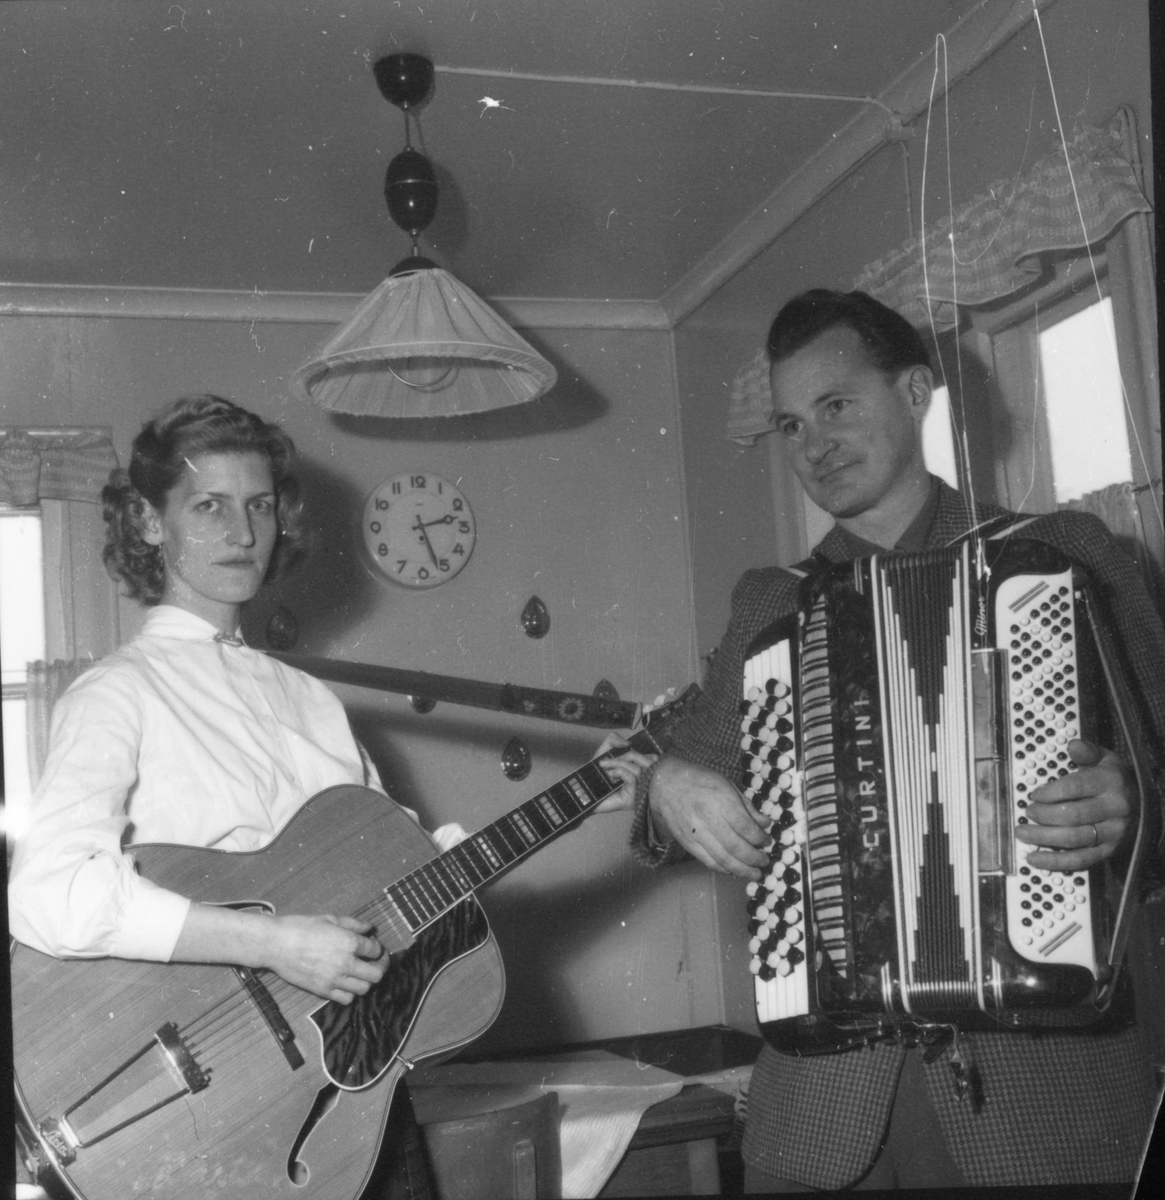 Gnistan. Kvinnan på gitarr hette Märta och kom från gården Michels i Mörtsjö, Erik Rosén kom från Nissänget/Roséns i Iste.
Bogården 1959